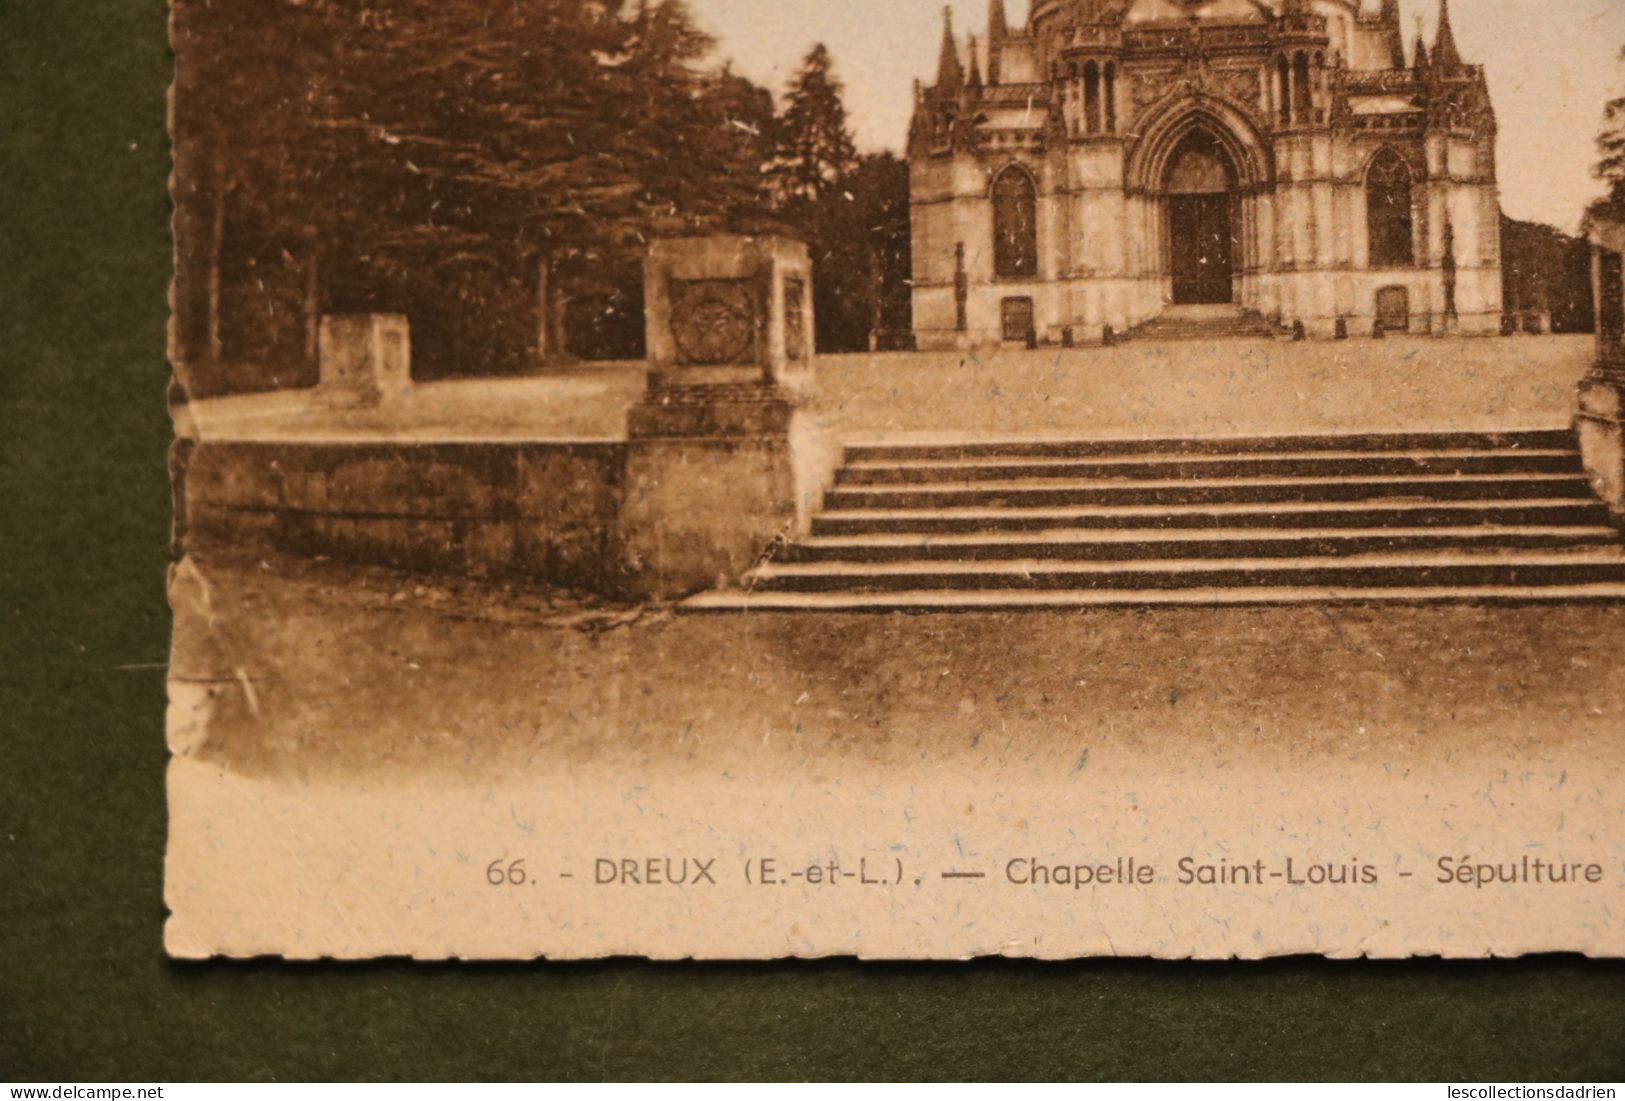 Carte Postale Ancienne Dreux Chapelle Saint-Louis Sépulture Famille D'Orléans 1947 - Dreux